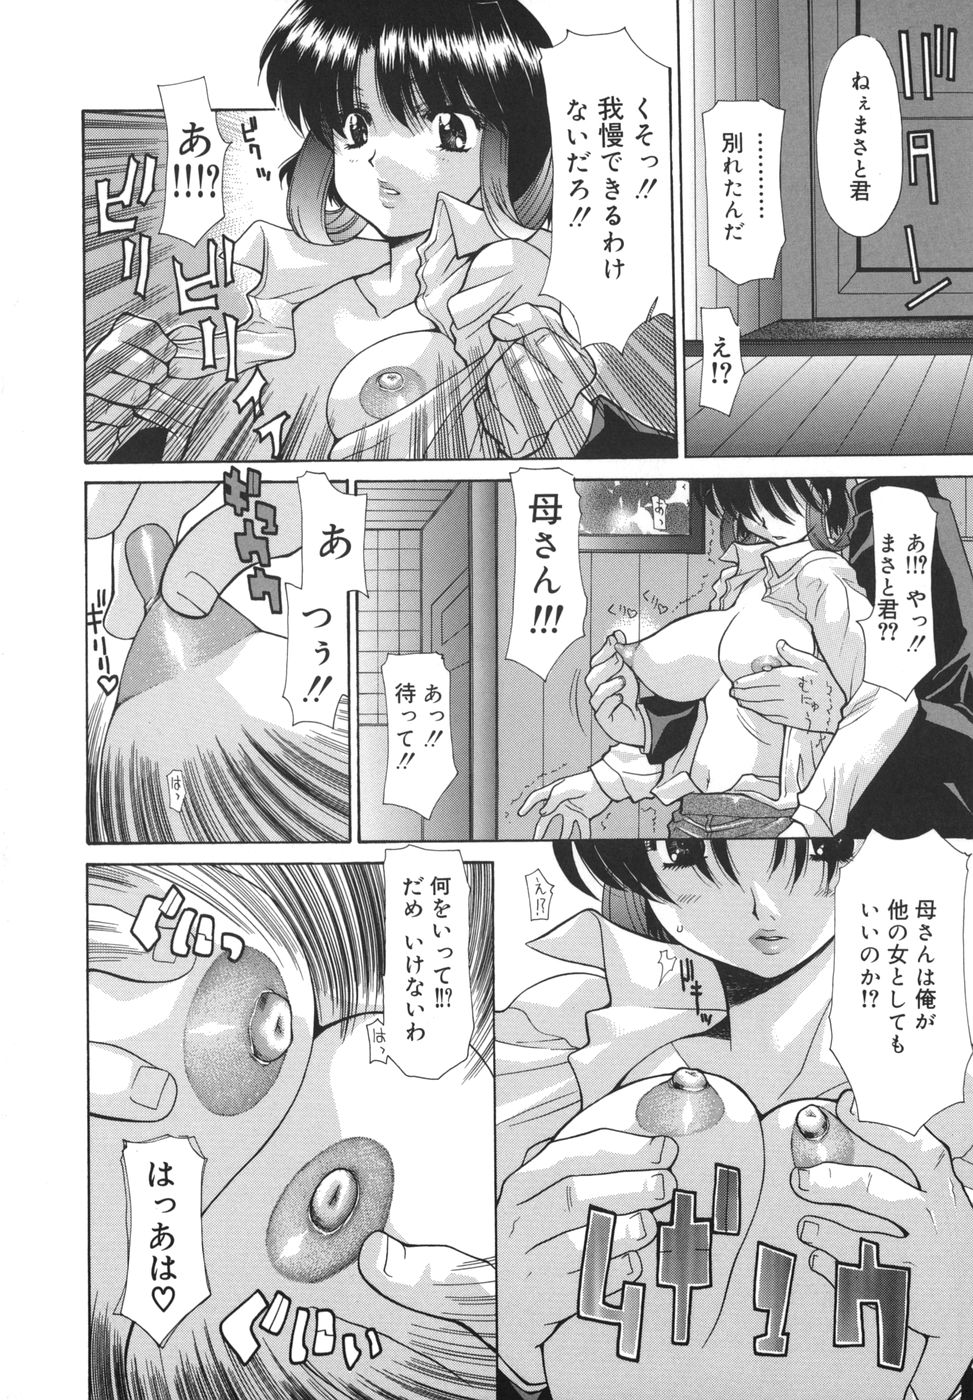 [Izawa Shinichi] Hana*Cupid page 6 full